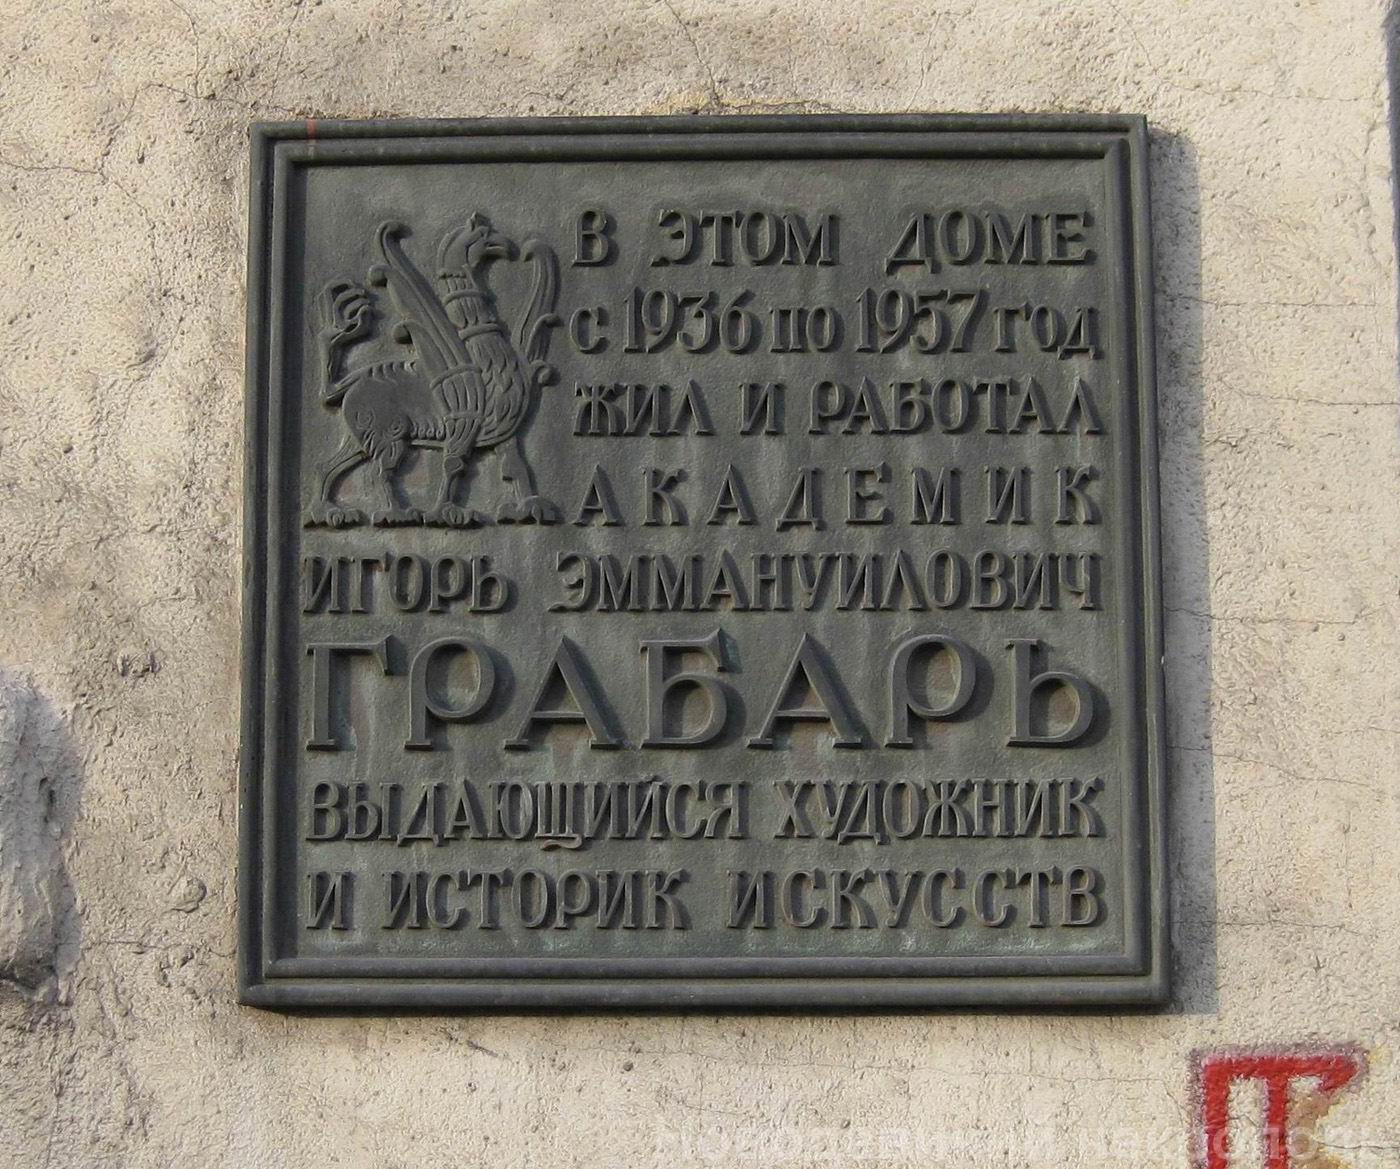 Мемориальная доска Грабарю И.Э. (1871-1960), арх. А.Заварзин, на Петровско-Разумовской аллее, дом 2, открыта в 1973.